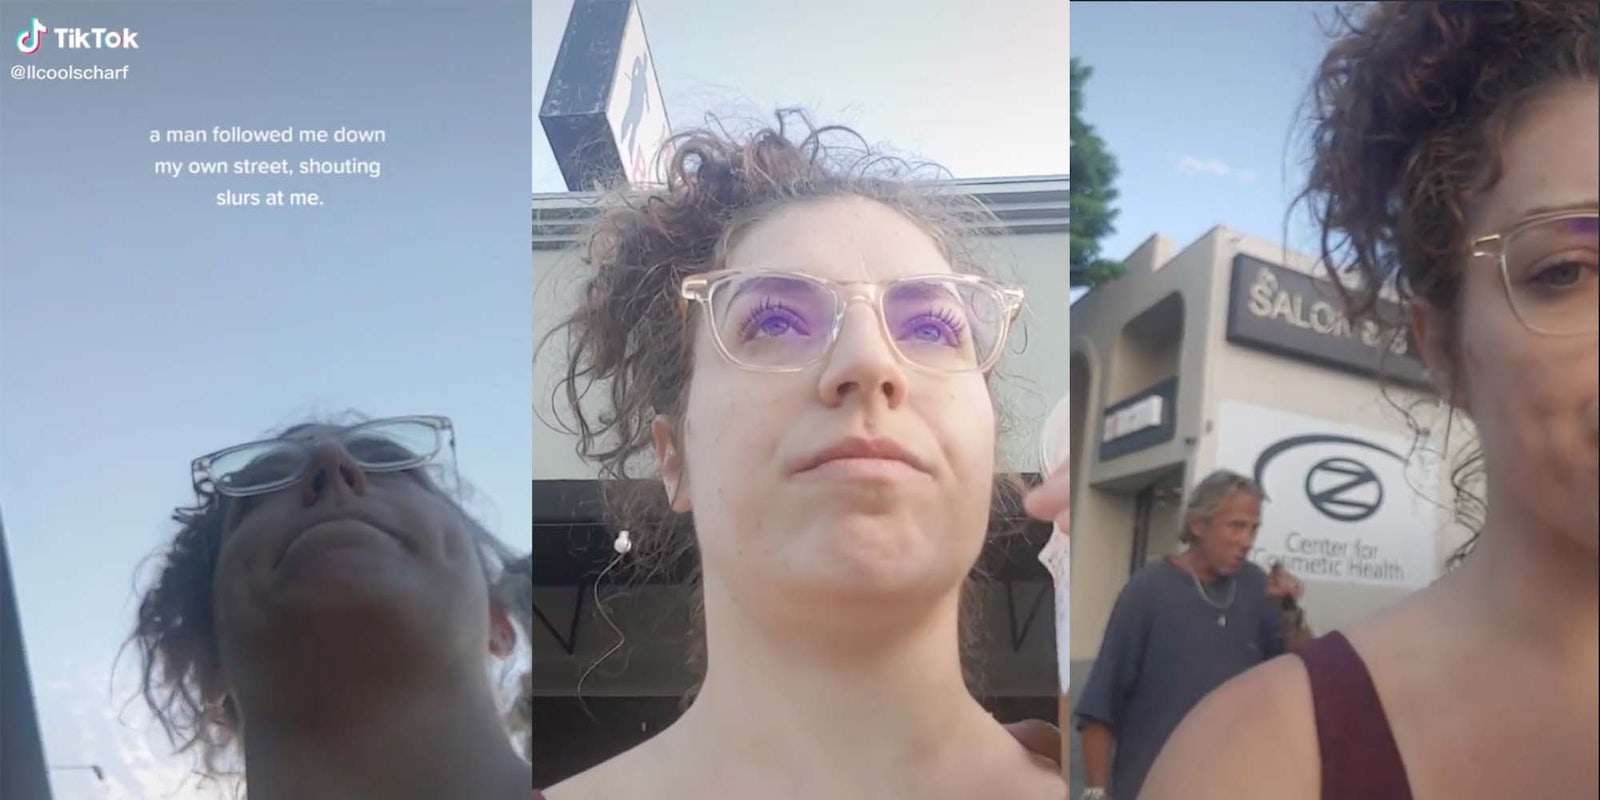 TikToker Lauren Scharf is seen being verbally harassed in public in a recent video.